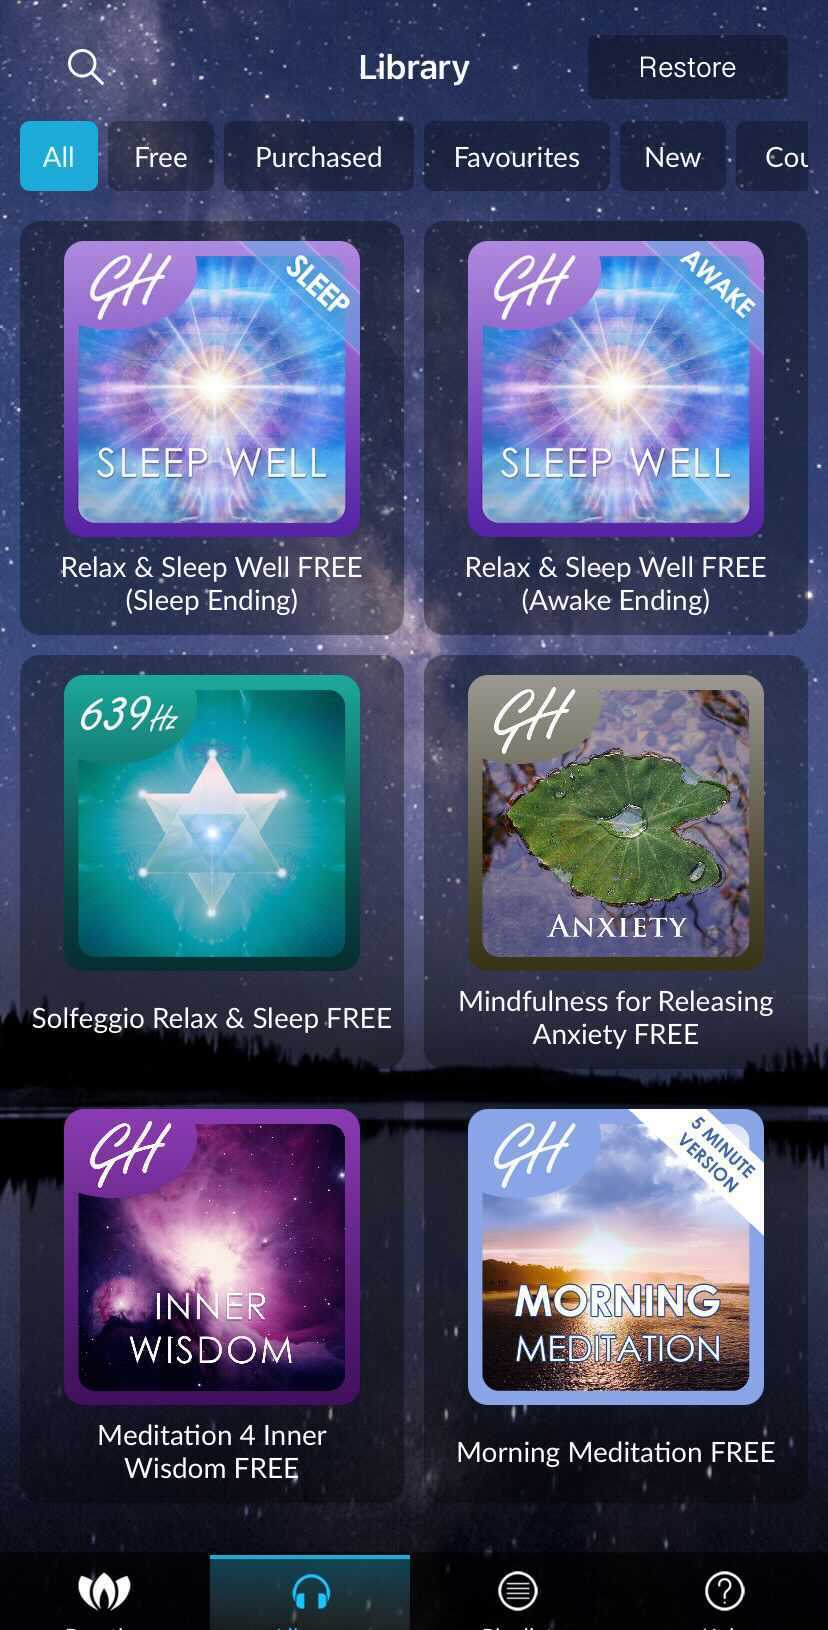 Relax and Sleep Well tiene una serie de ofertas gratuitas para ayudarlo a descansar.